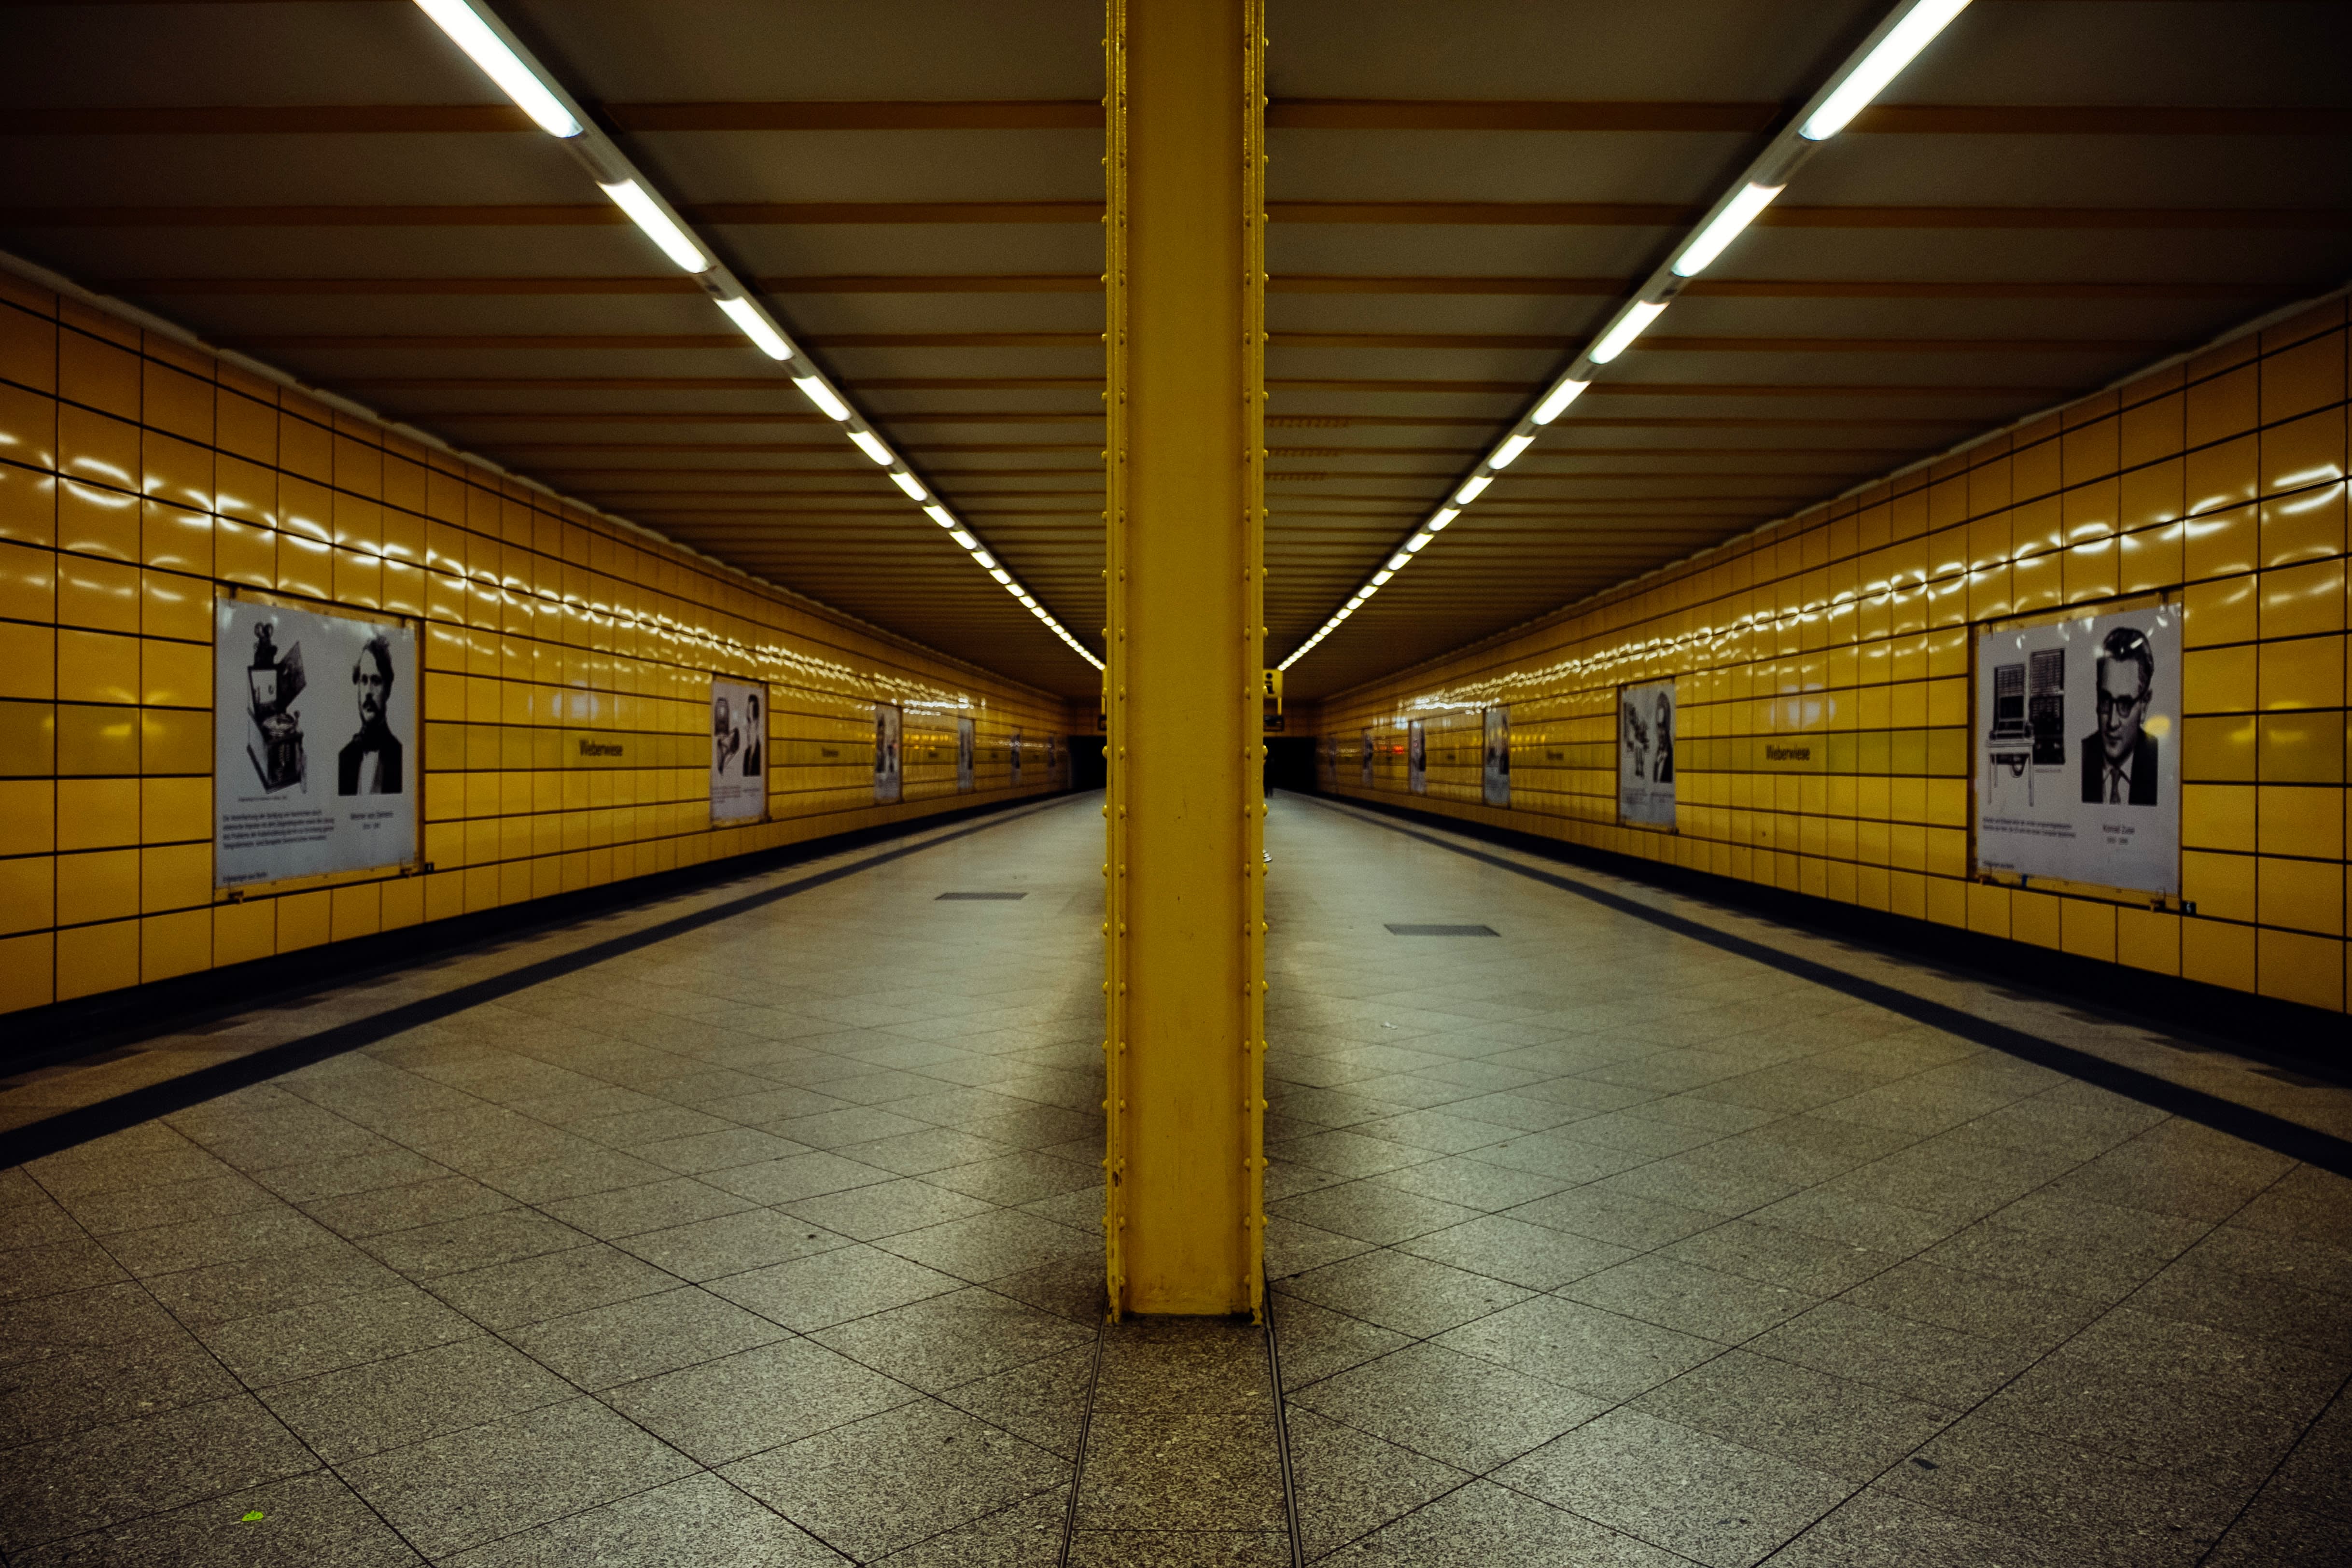 Berlin underground station in yellow